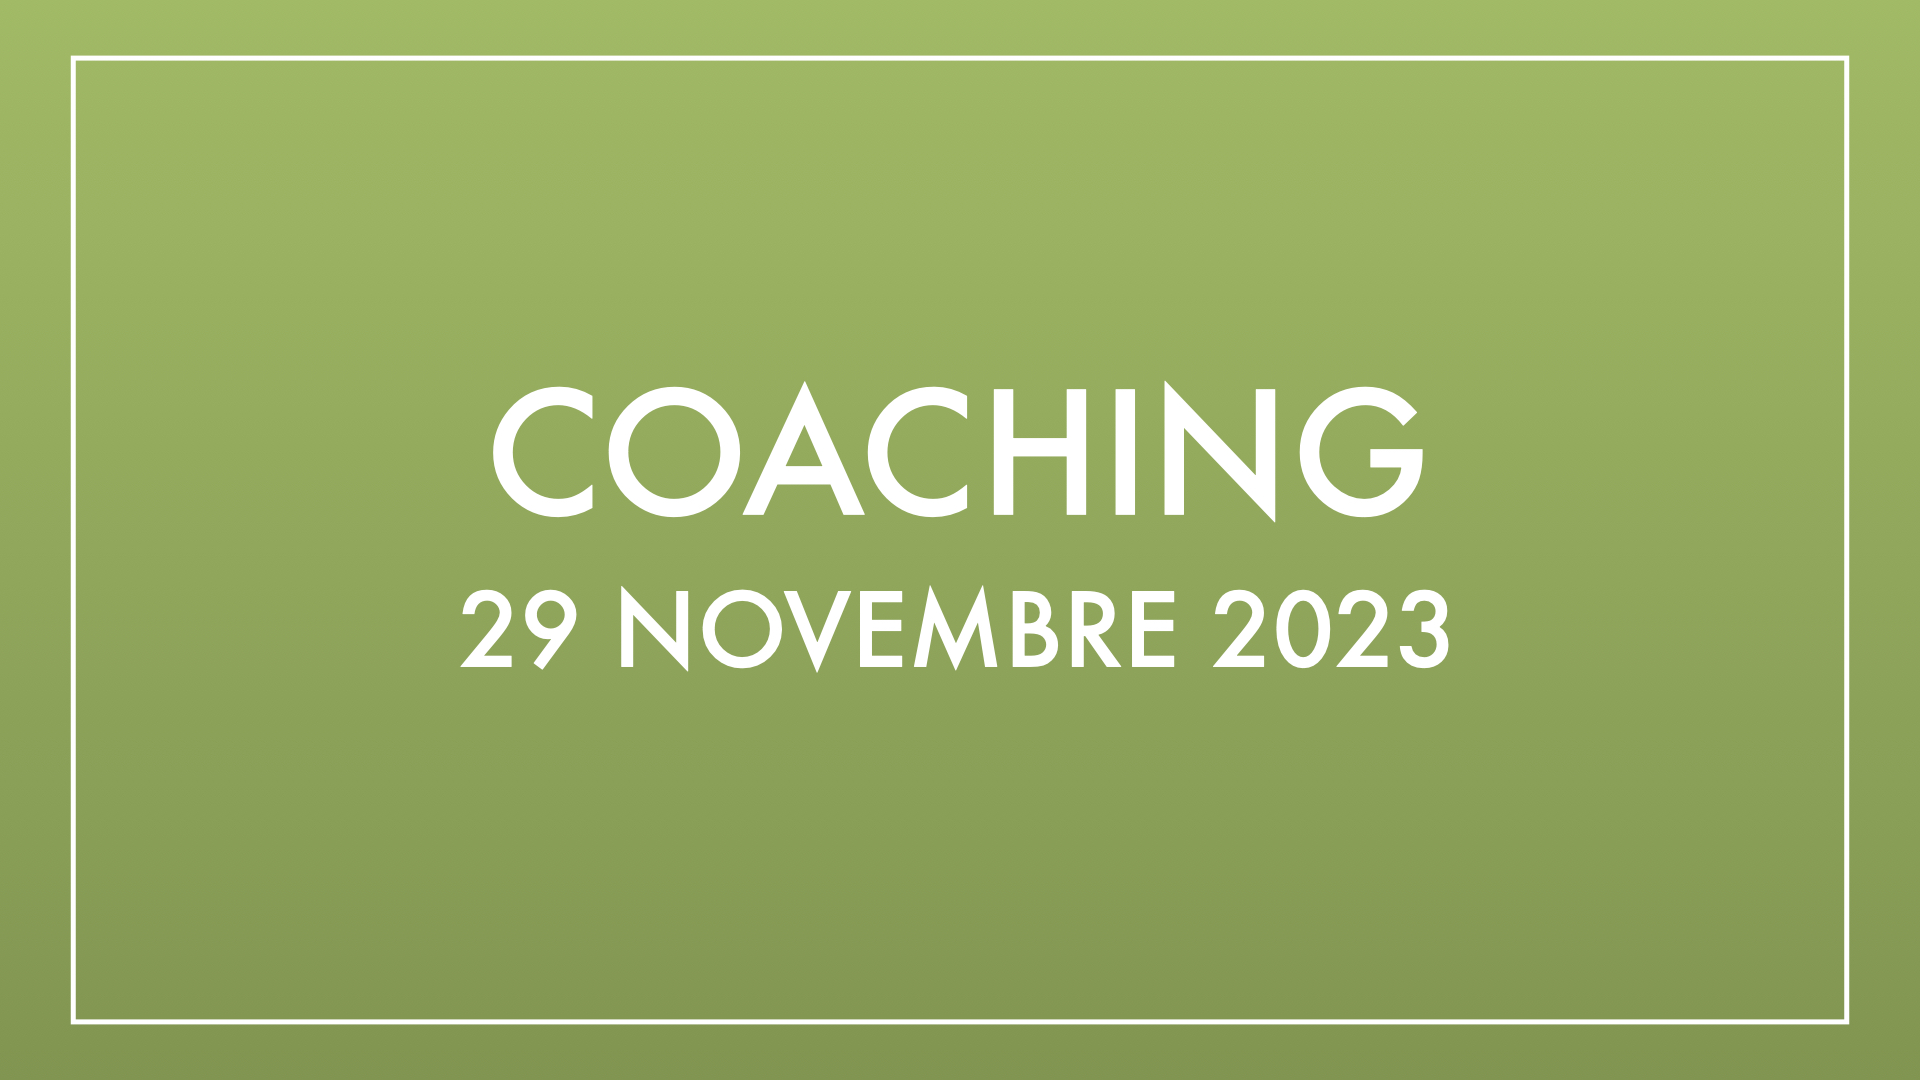 Coaching 29 novembre 2023